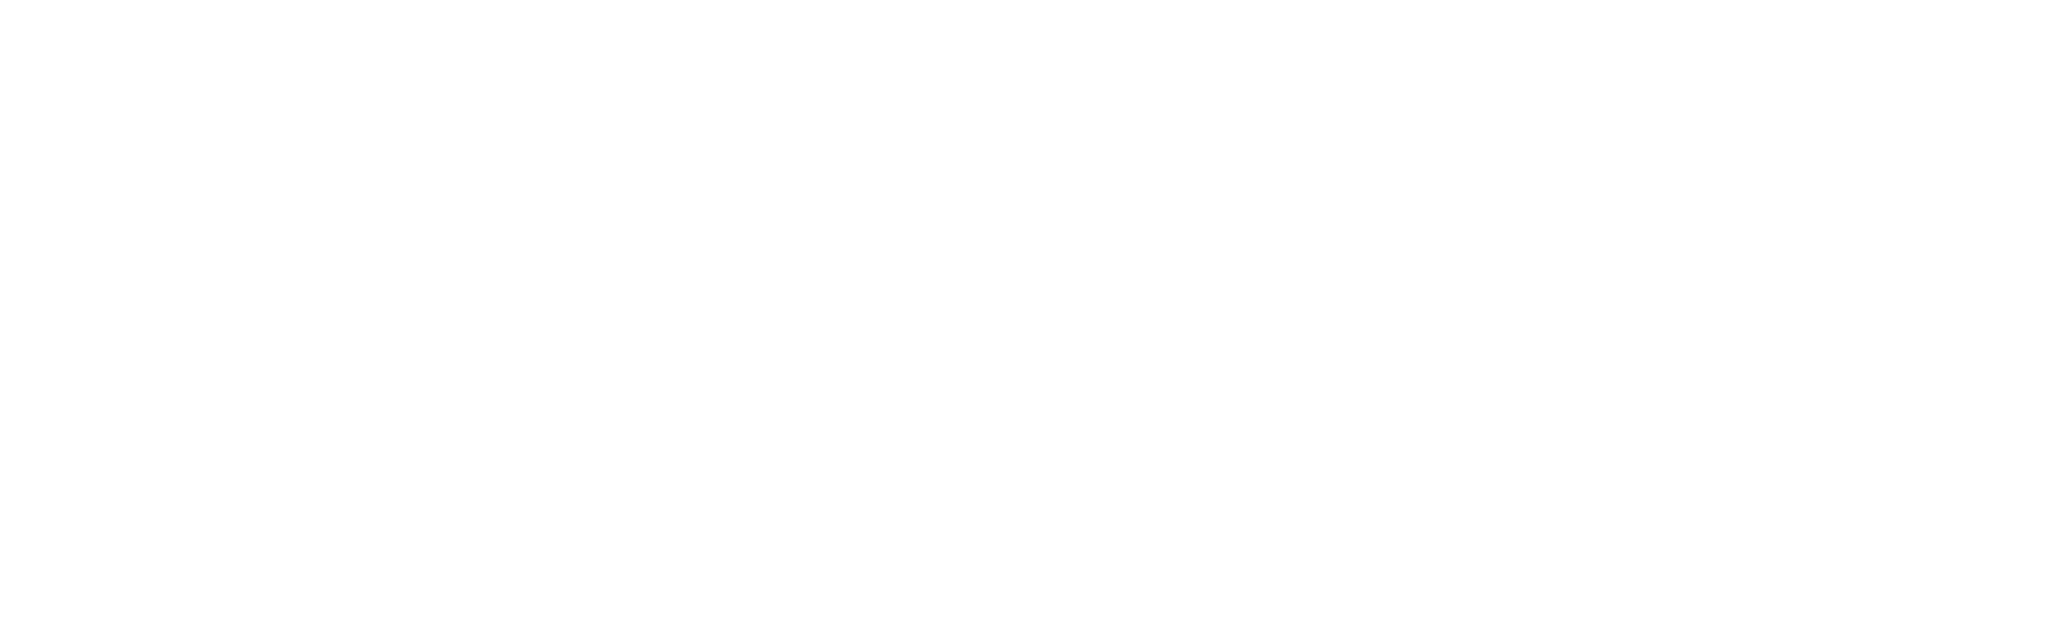 Minhas Lawyers Logo